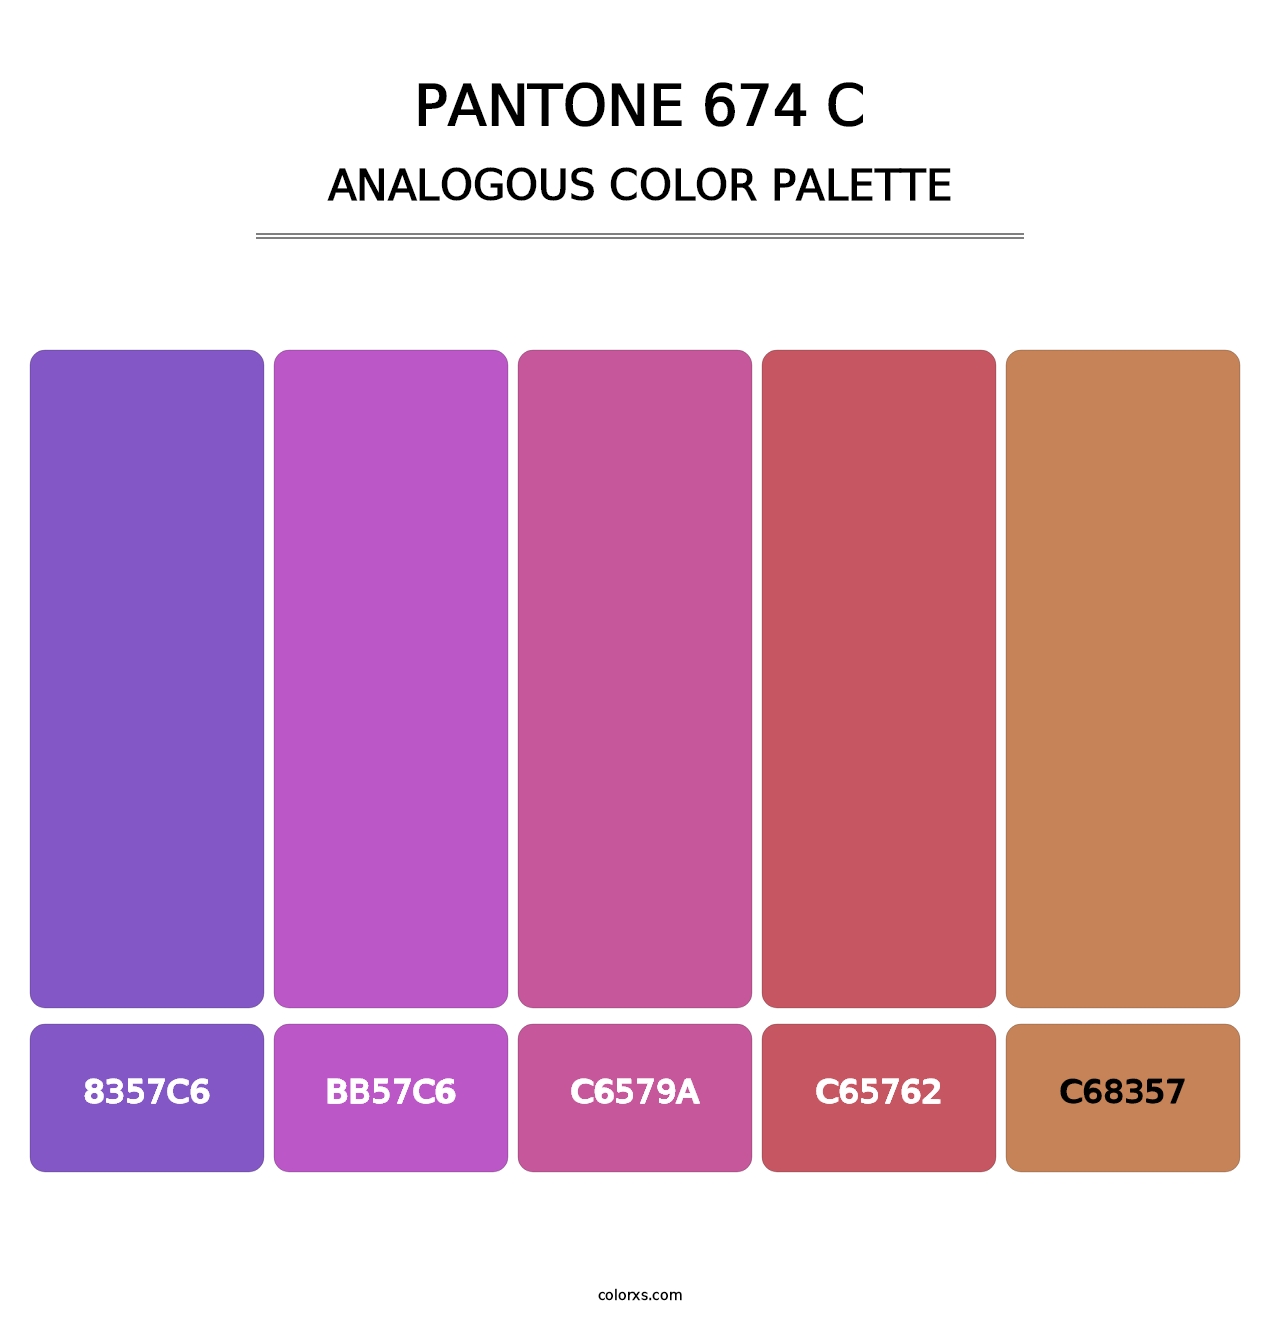 PANTONE 674 C - Analogous Color Palette